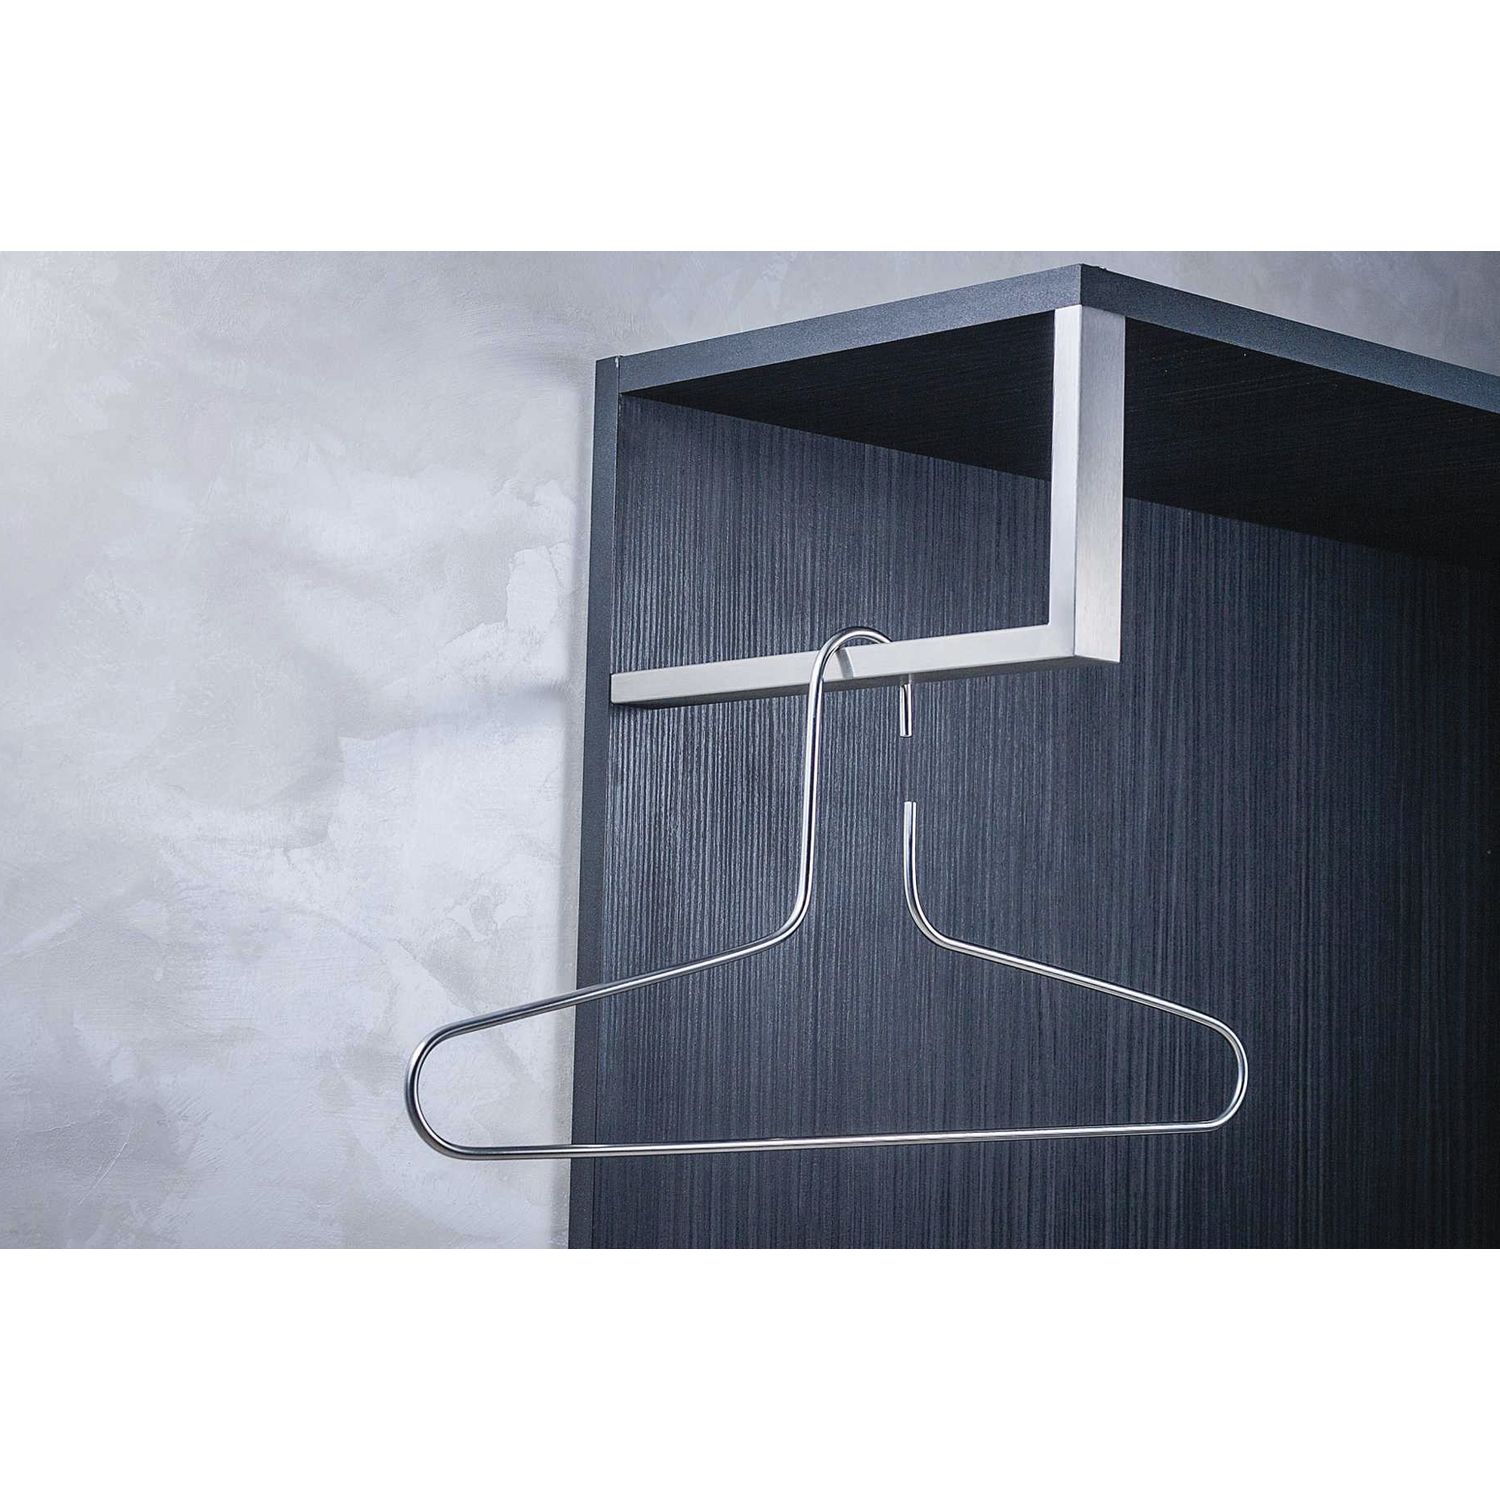 Simausrom Garderobenstange L Form Cato 300x150mm – Kleiderstange unter Hutablage Garderobe, Edelstahl gebürstet